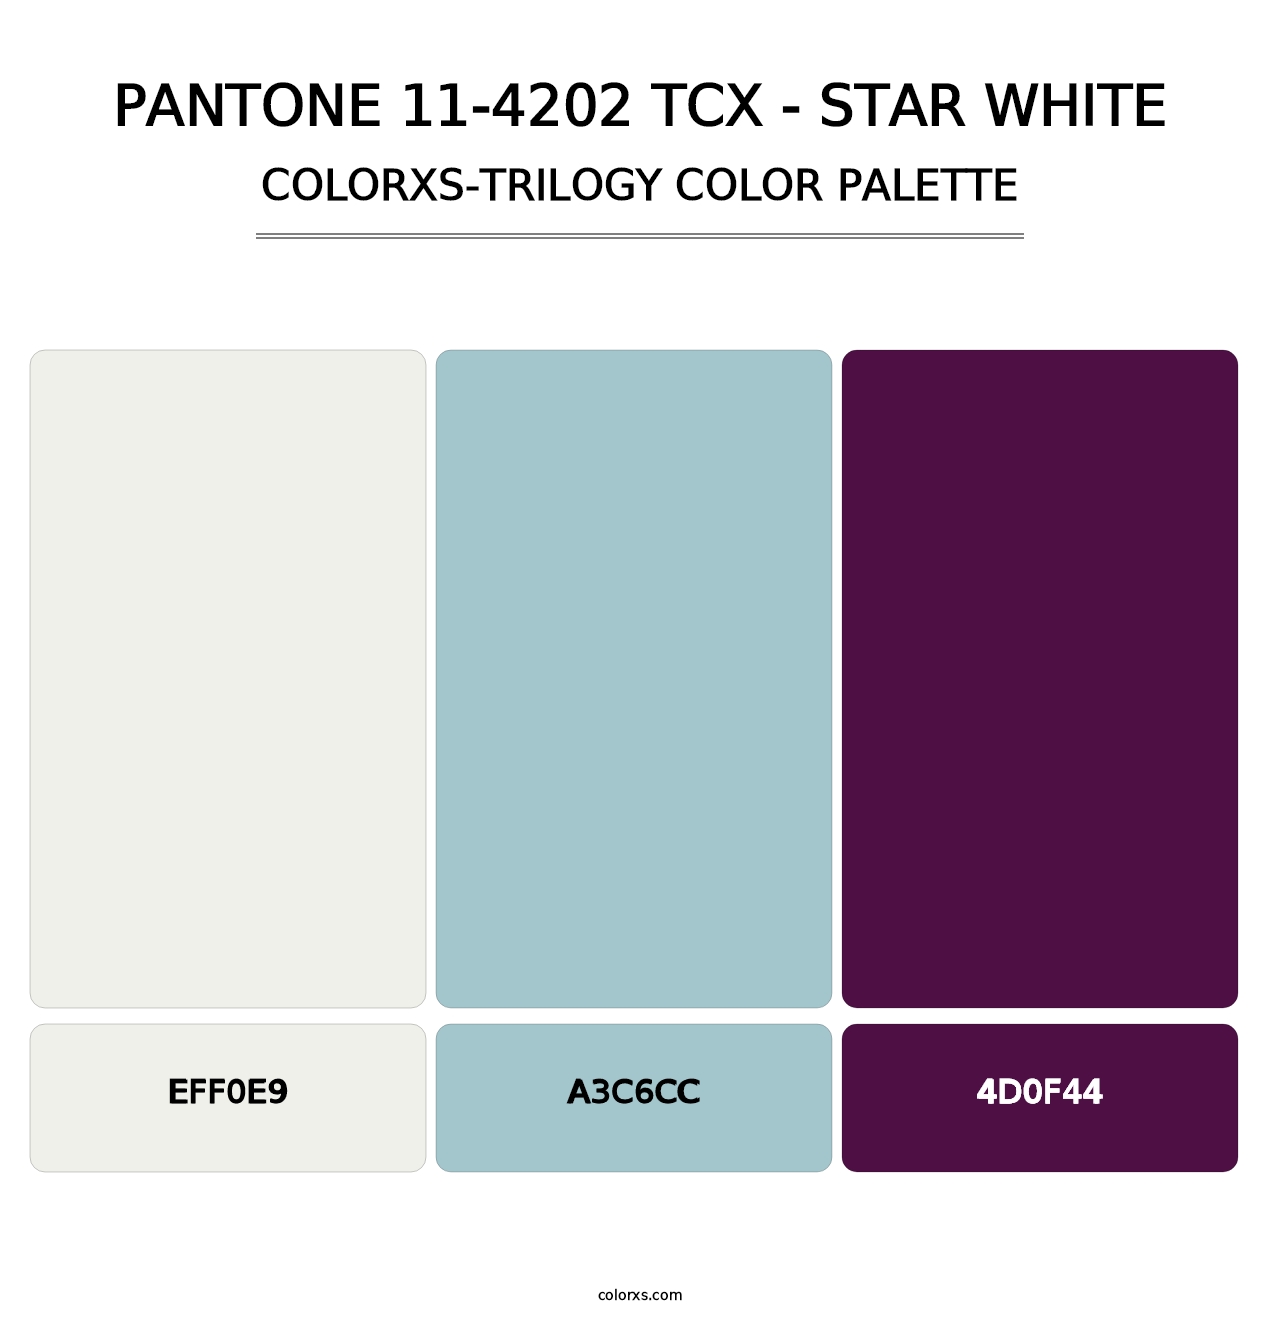 PANTONE 11-4202 TCX - Star White - Colorxs Trilogy Palette